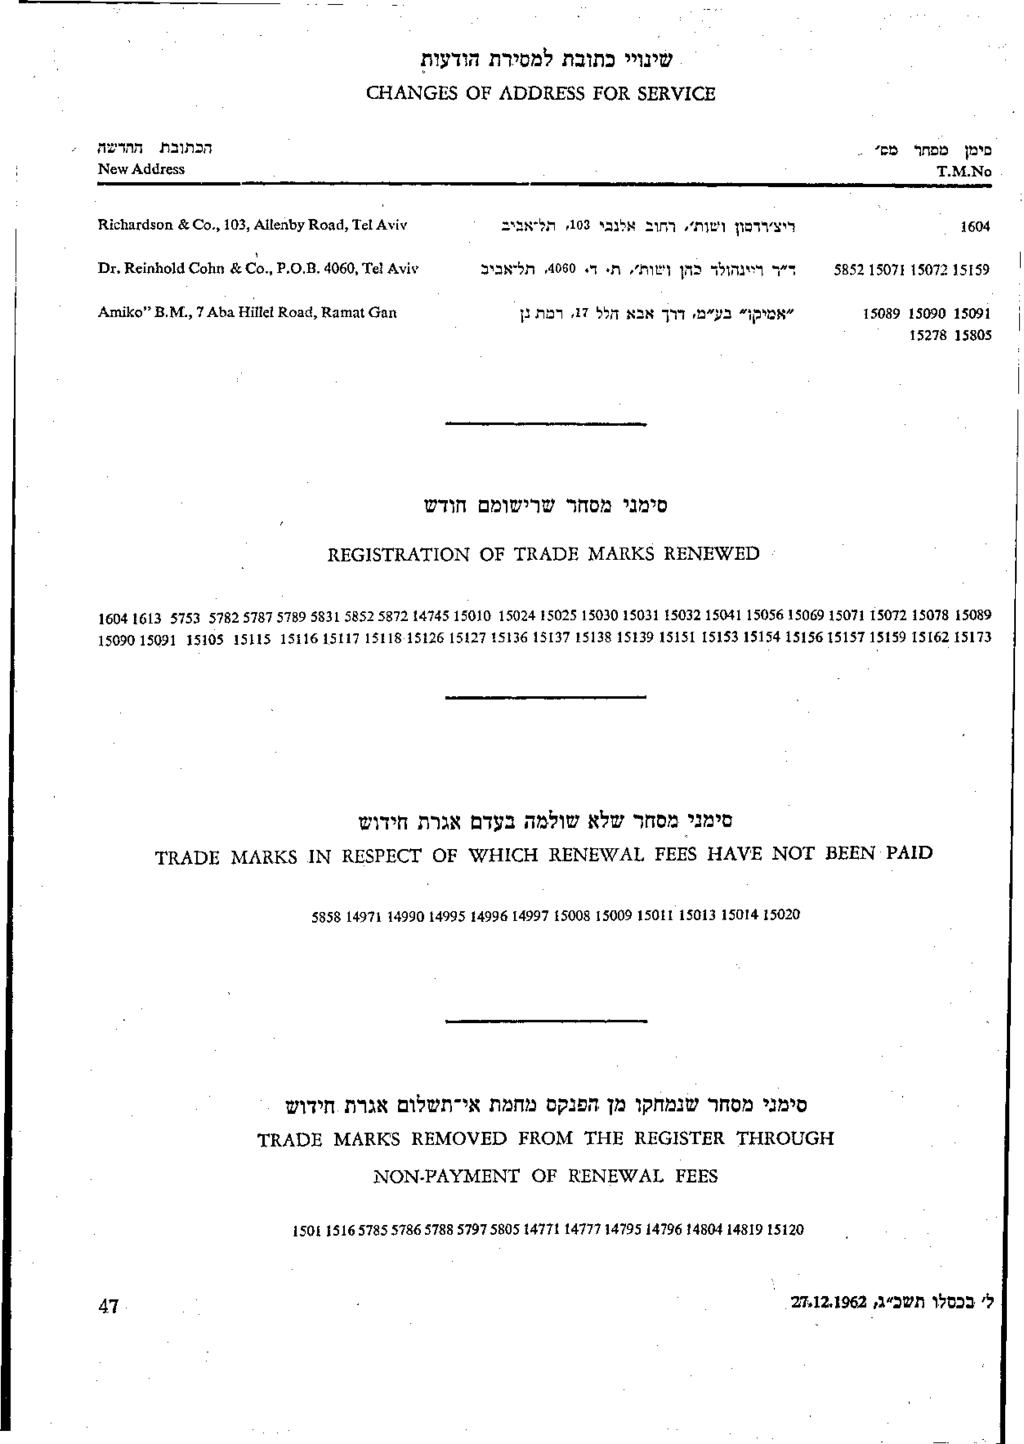 שינויי כתובת למסירת הודעות CHANGES OF ADDRESS FOR SERVICE סימן מסחר CD הכתובת החדשה New Address T.M.No Richardson & Co., 103, Aiienby Road, Tel Aviv 1604 Dr. Reinhold Cohn & Co., p.o.b. 4060, Tel Aviv 15159 15072 15071 Amiko"B.